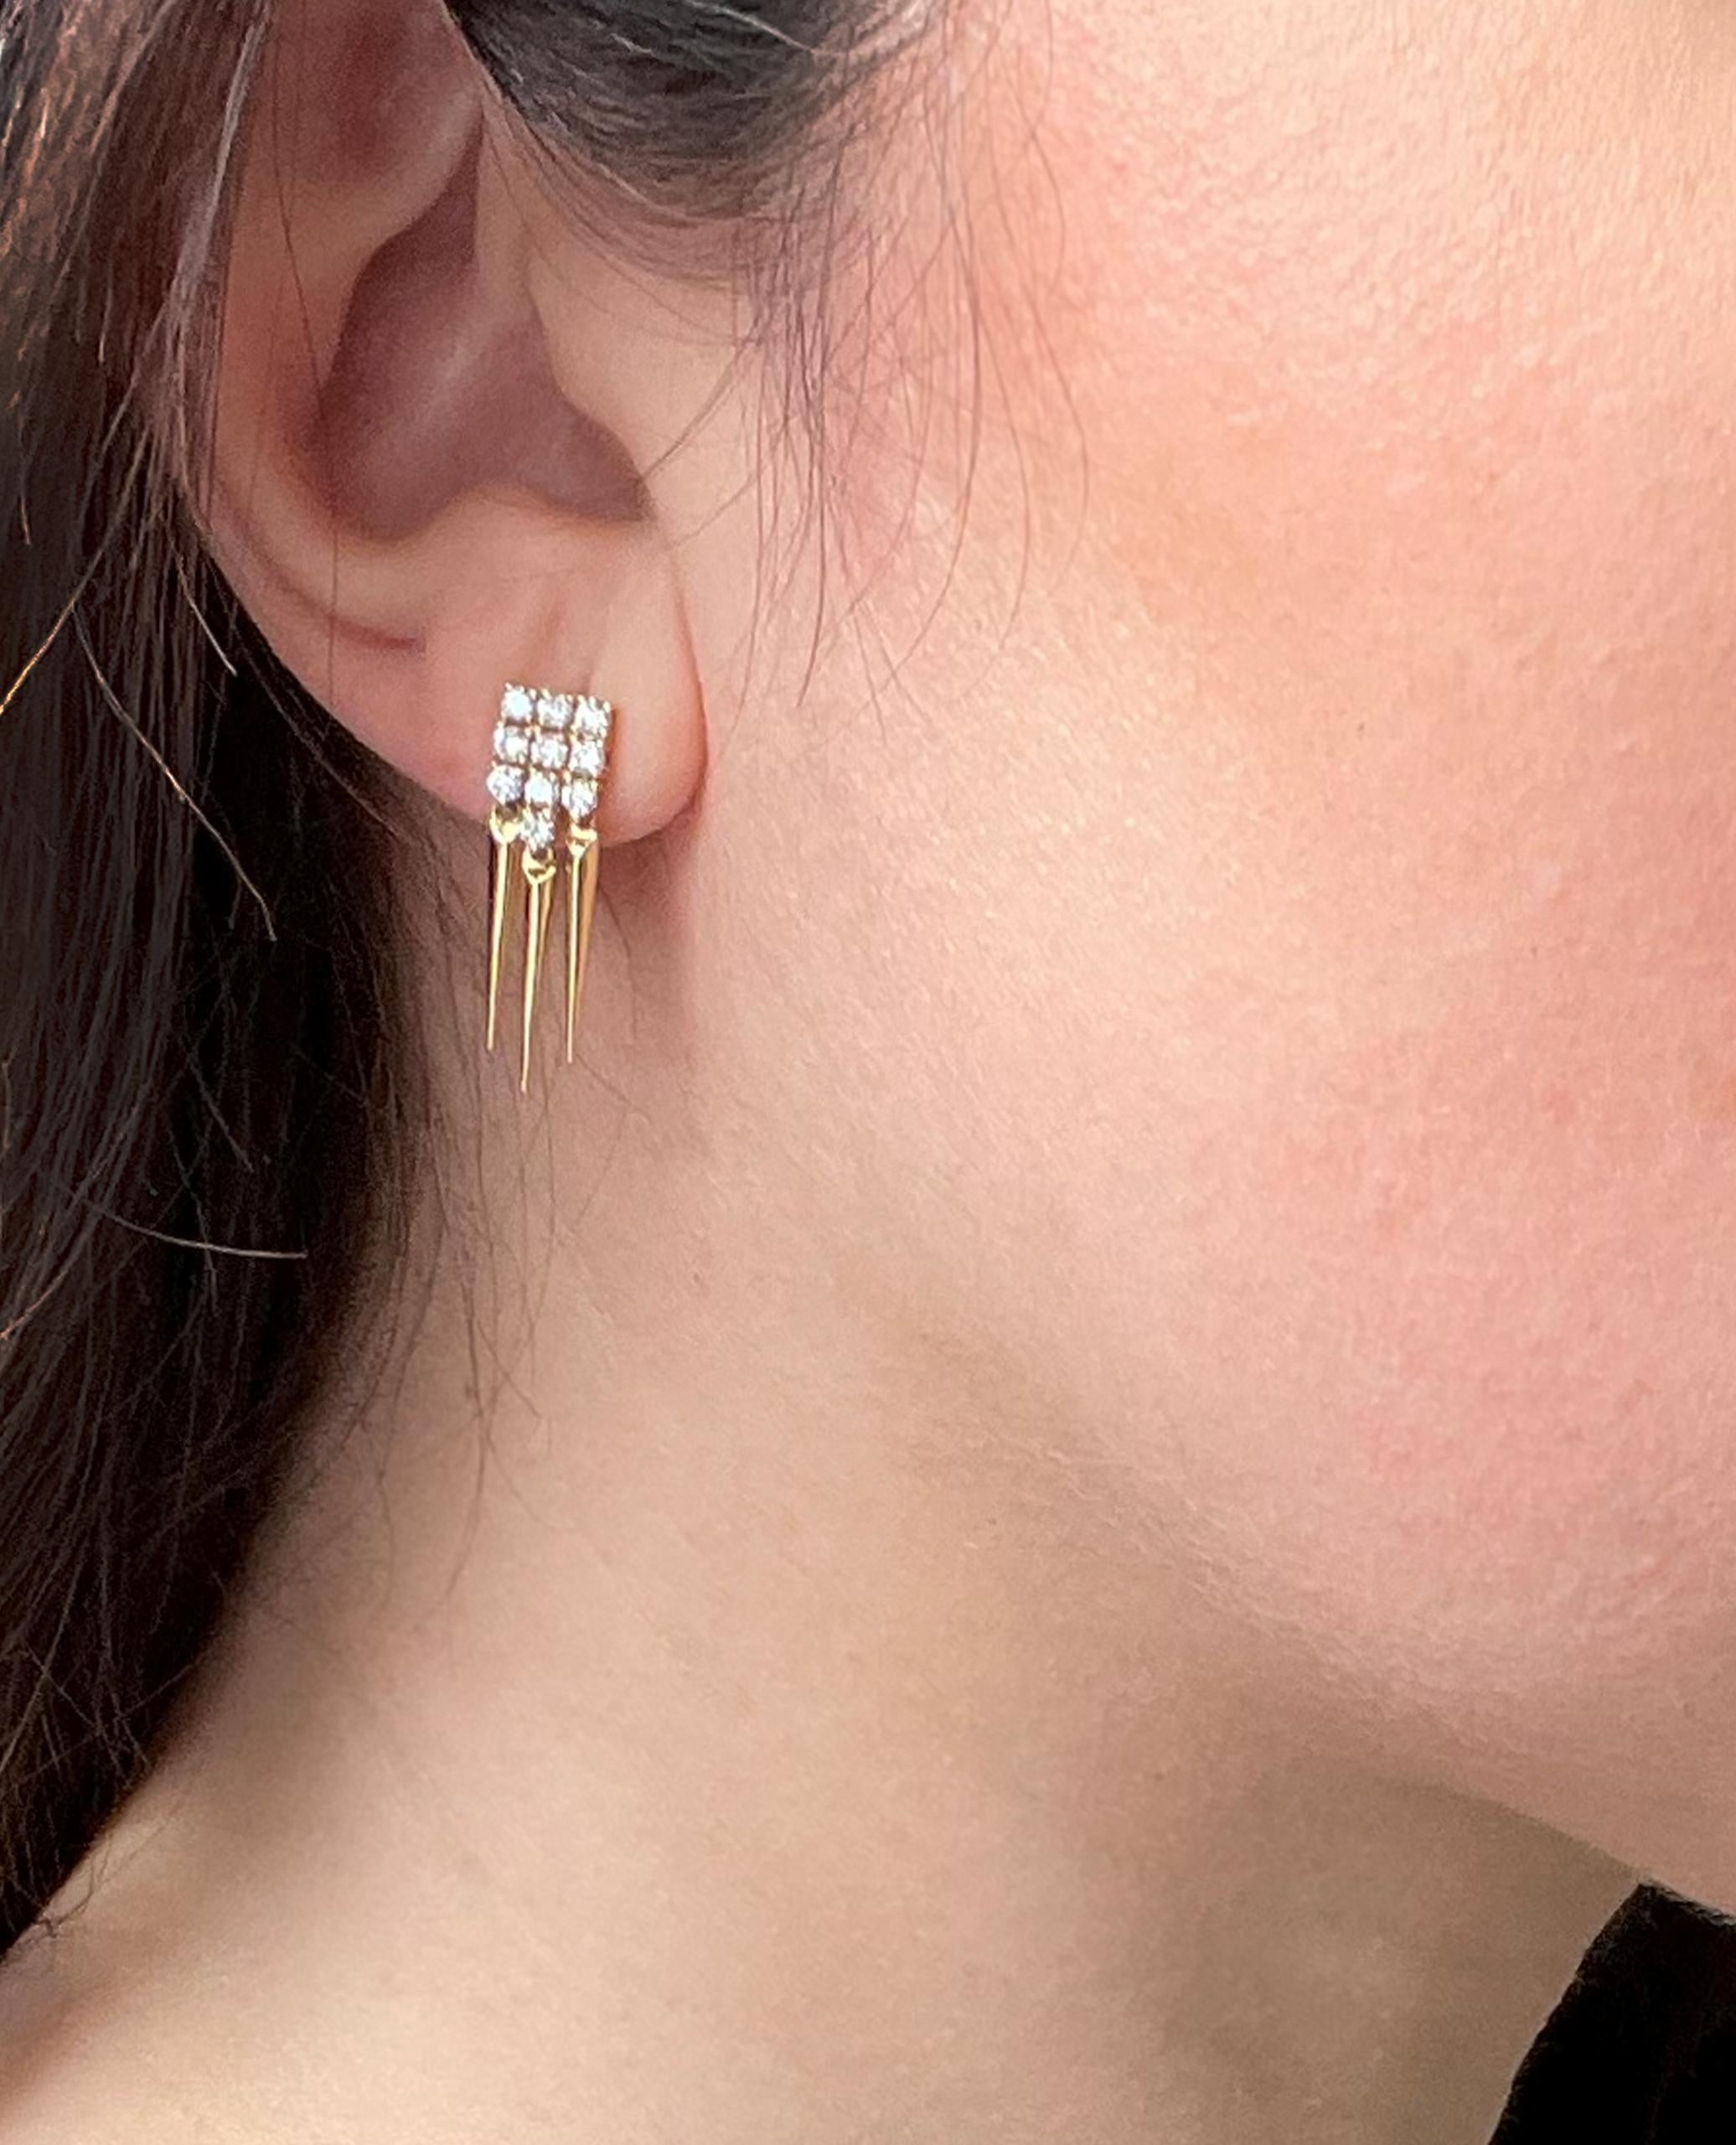 spikey earrings